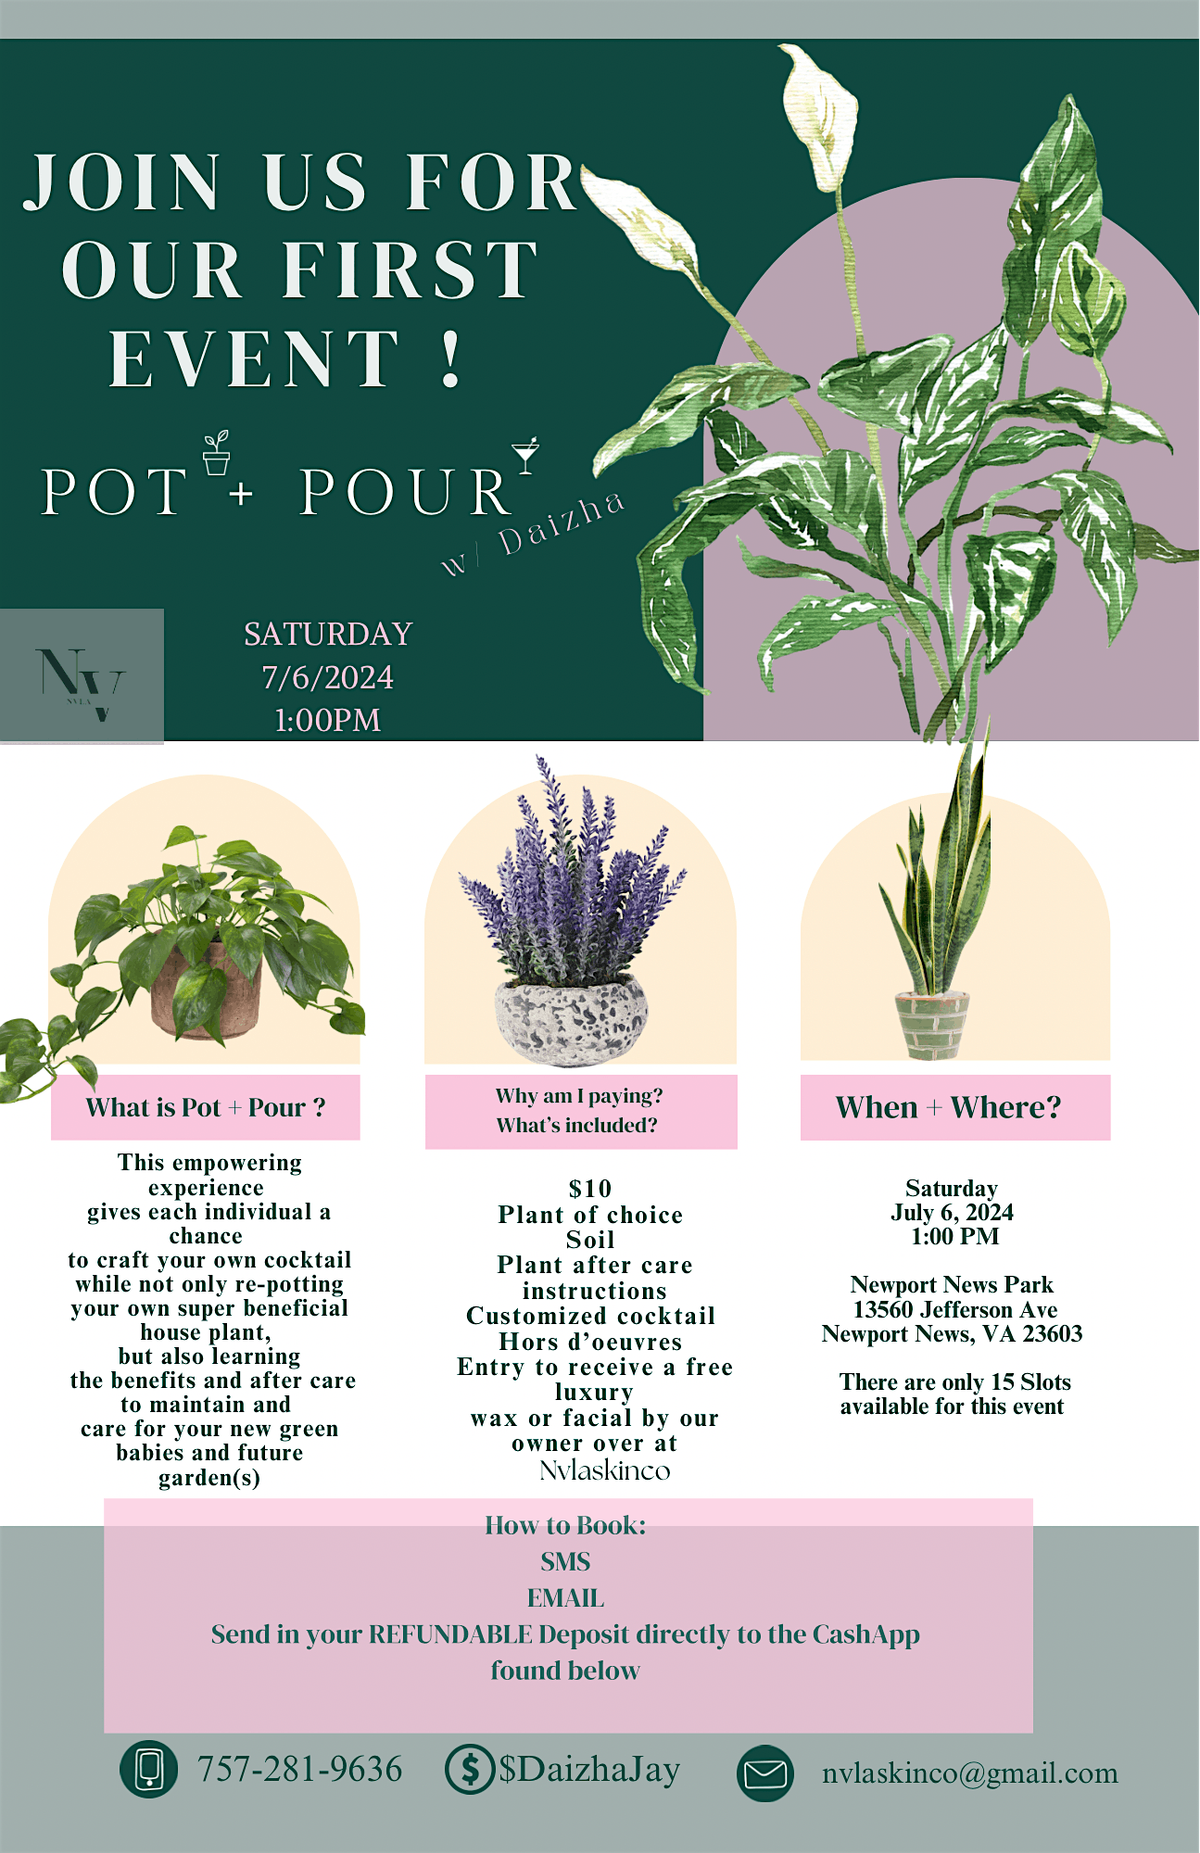 Pot + Pour (NvlaSkinCo Community Event)